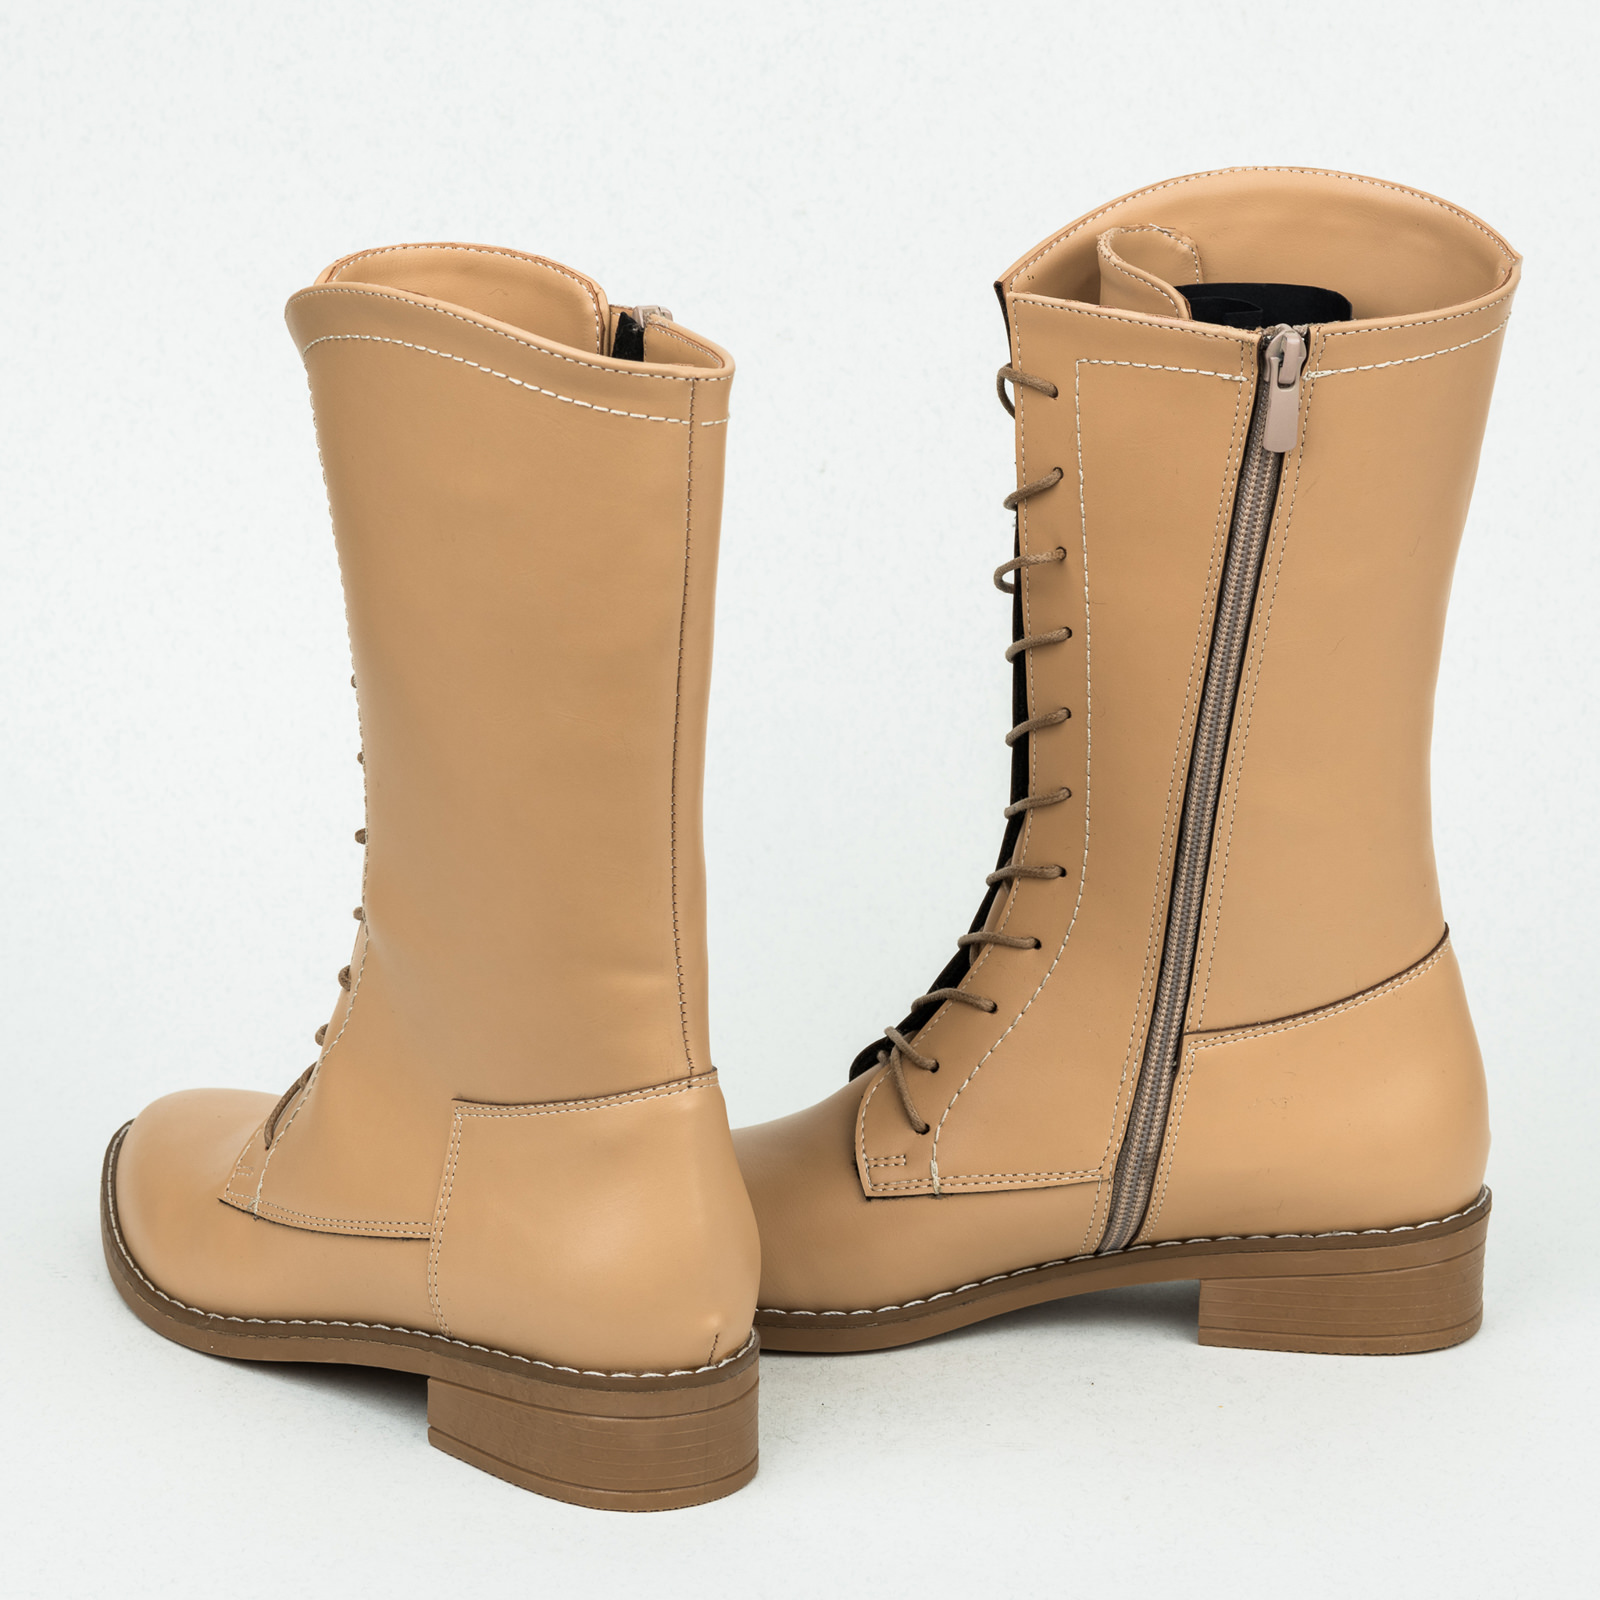 Women ankle boots B144 - BEIGE